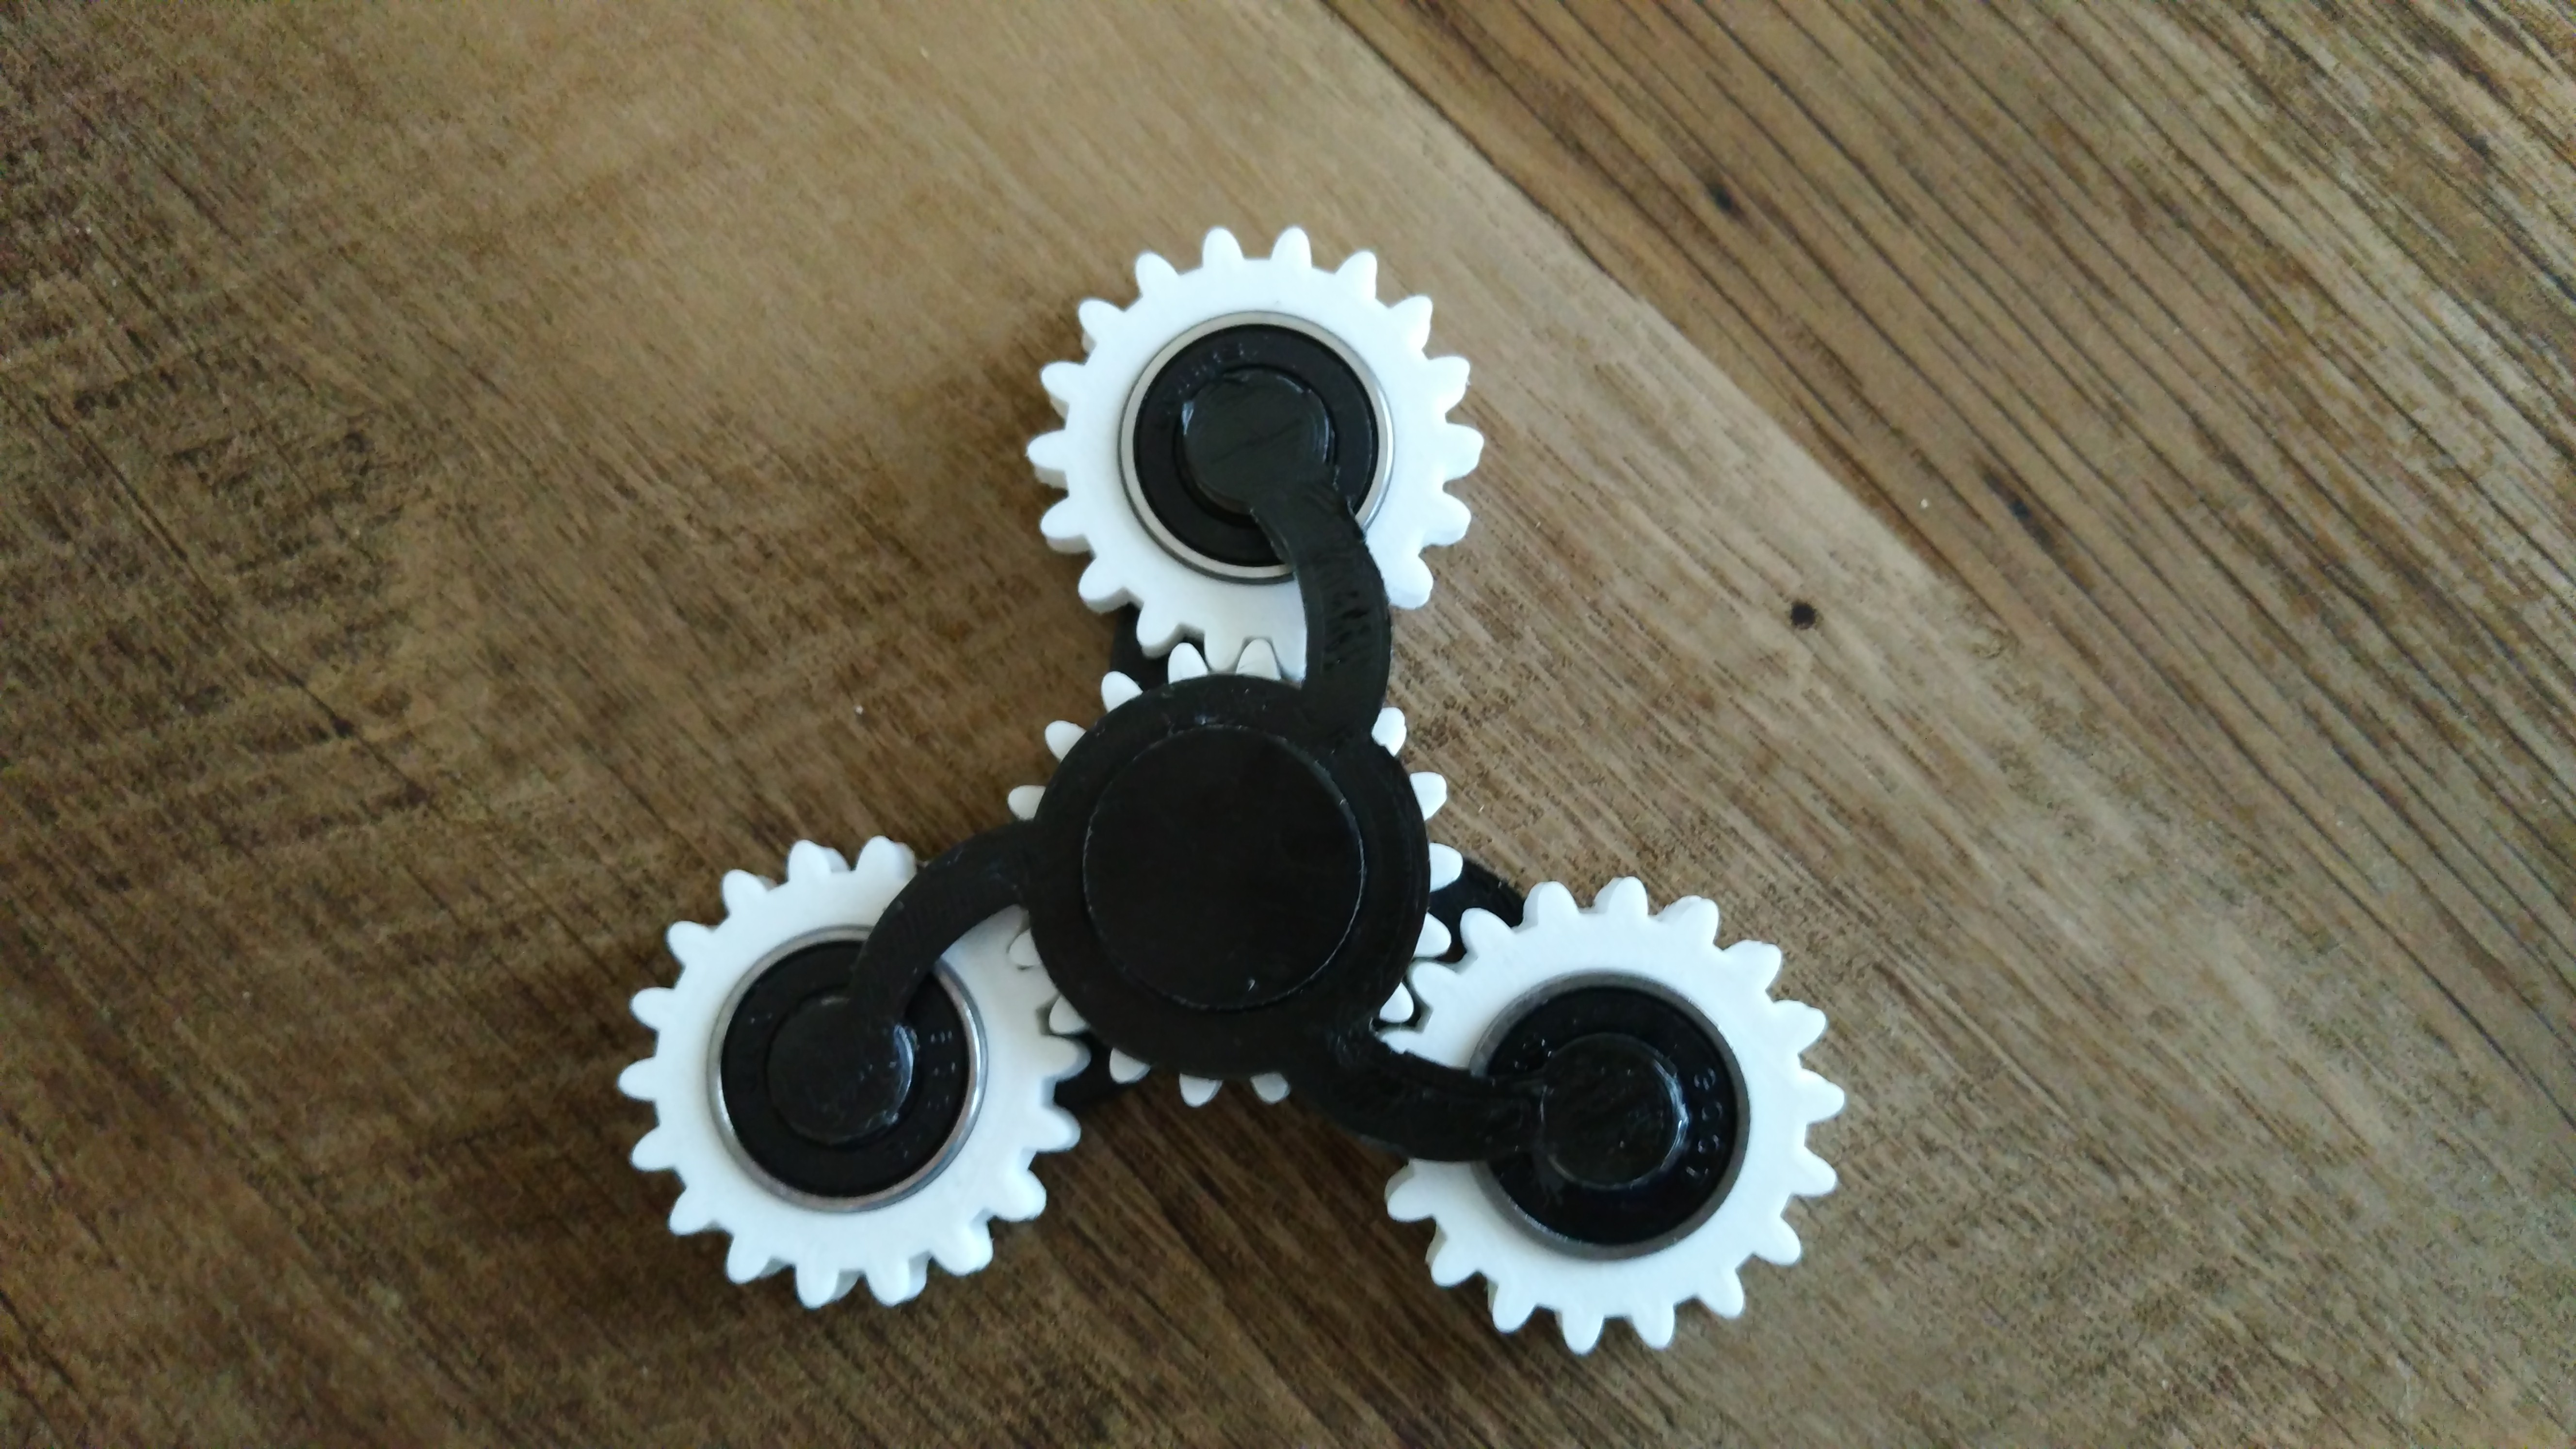 Gear Fidget Spinner